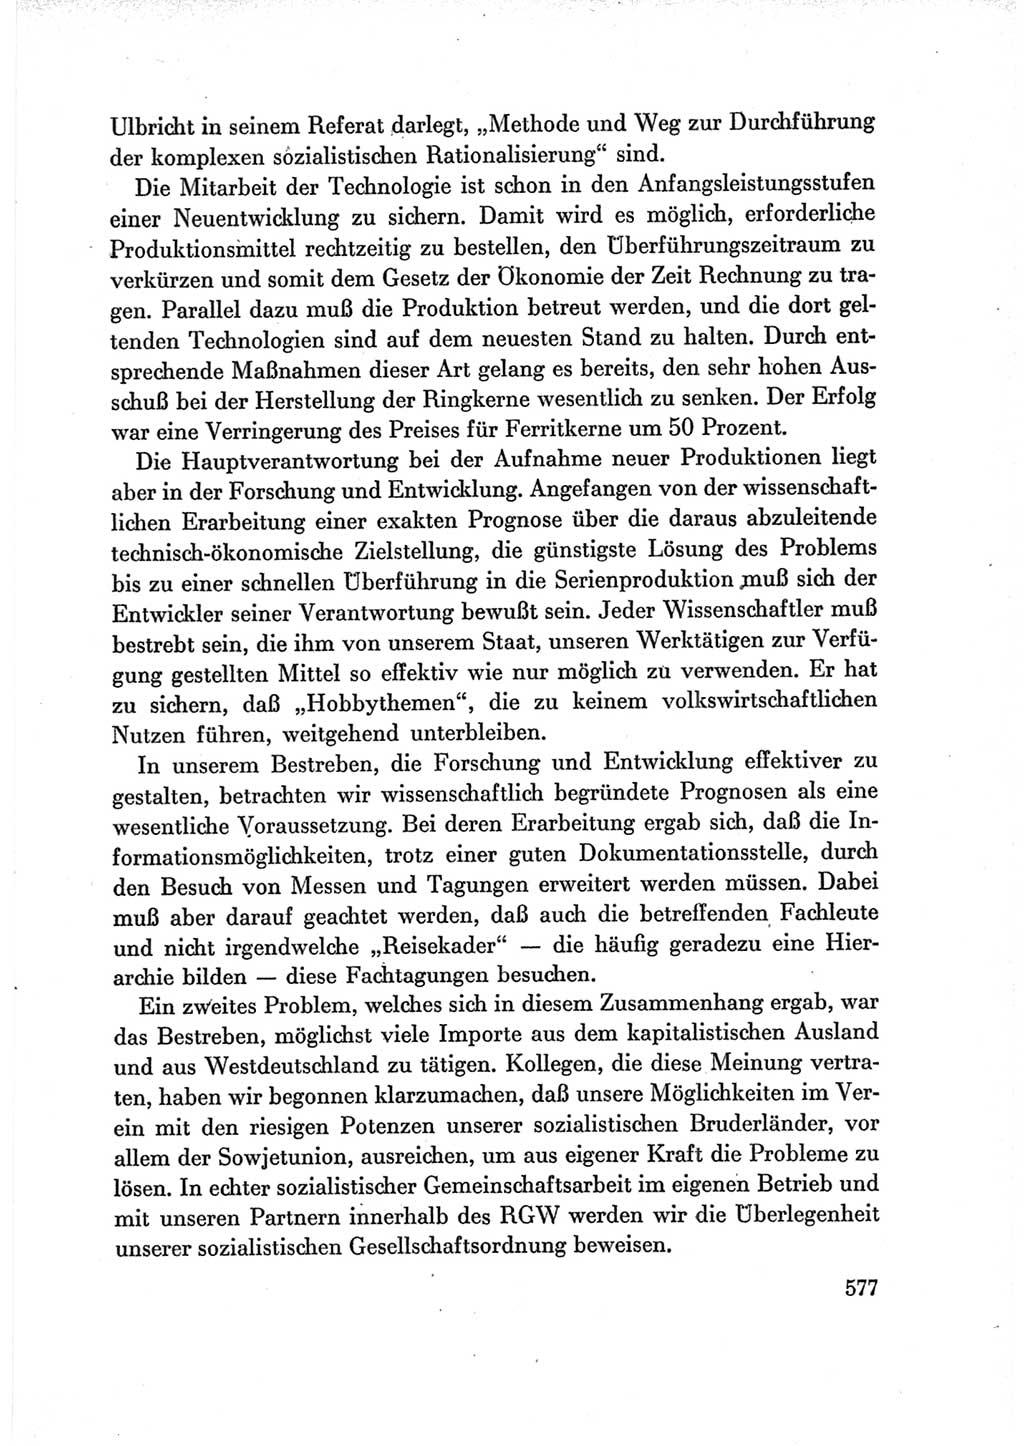 Protokoll der Verhandlungen des Ⅶ. Parteitages der Sozialistischen Einheitspartei Deutschlands (SED) [Deutsche Demokratische Republik (DDR)] 1967, Band Ⅲ, Seite 577 (Prot. Verh. Ⅶ. PT SED DDR 1967, Bd. Ⅲ, S. 577)